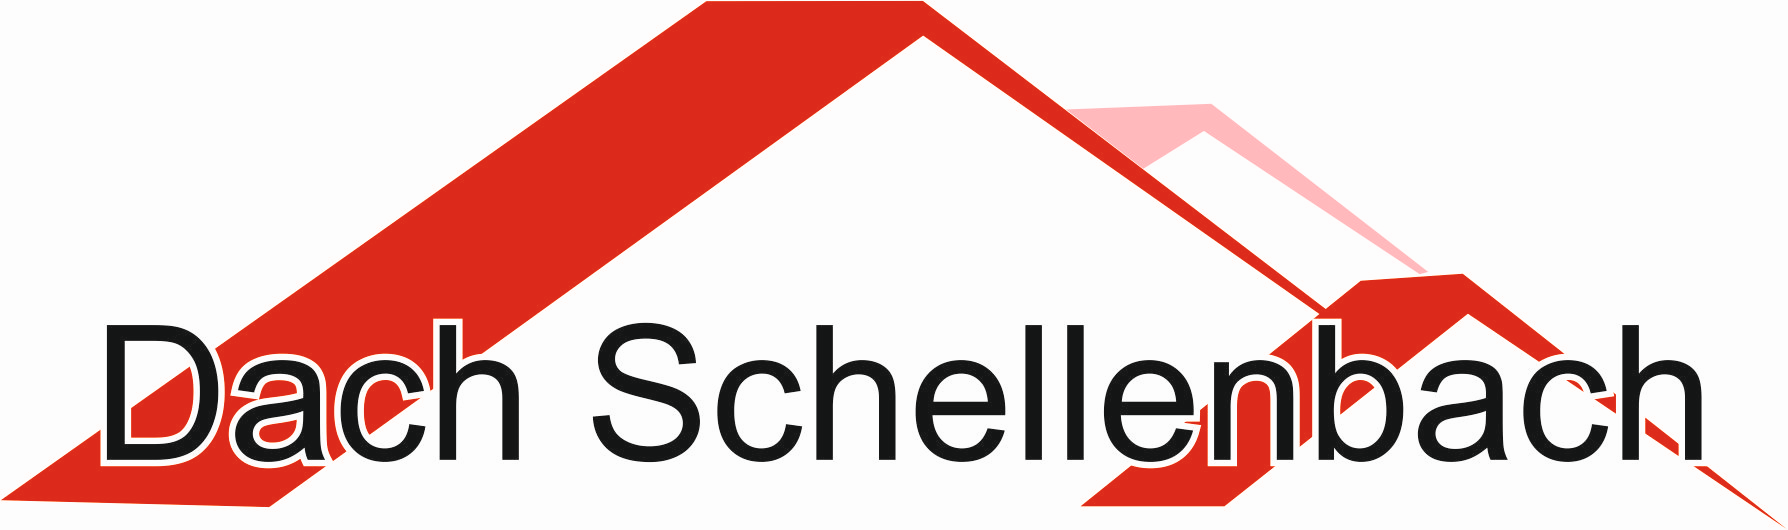 Dach-Schellenbach